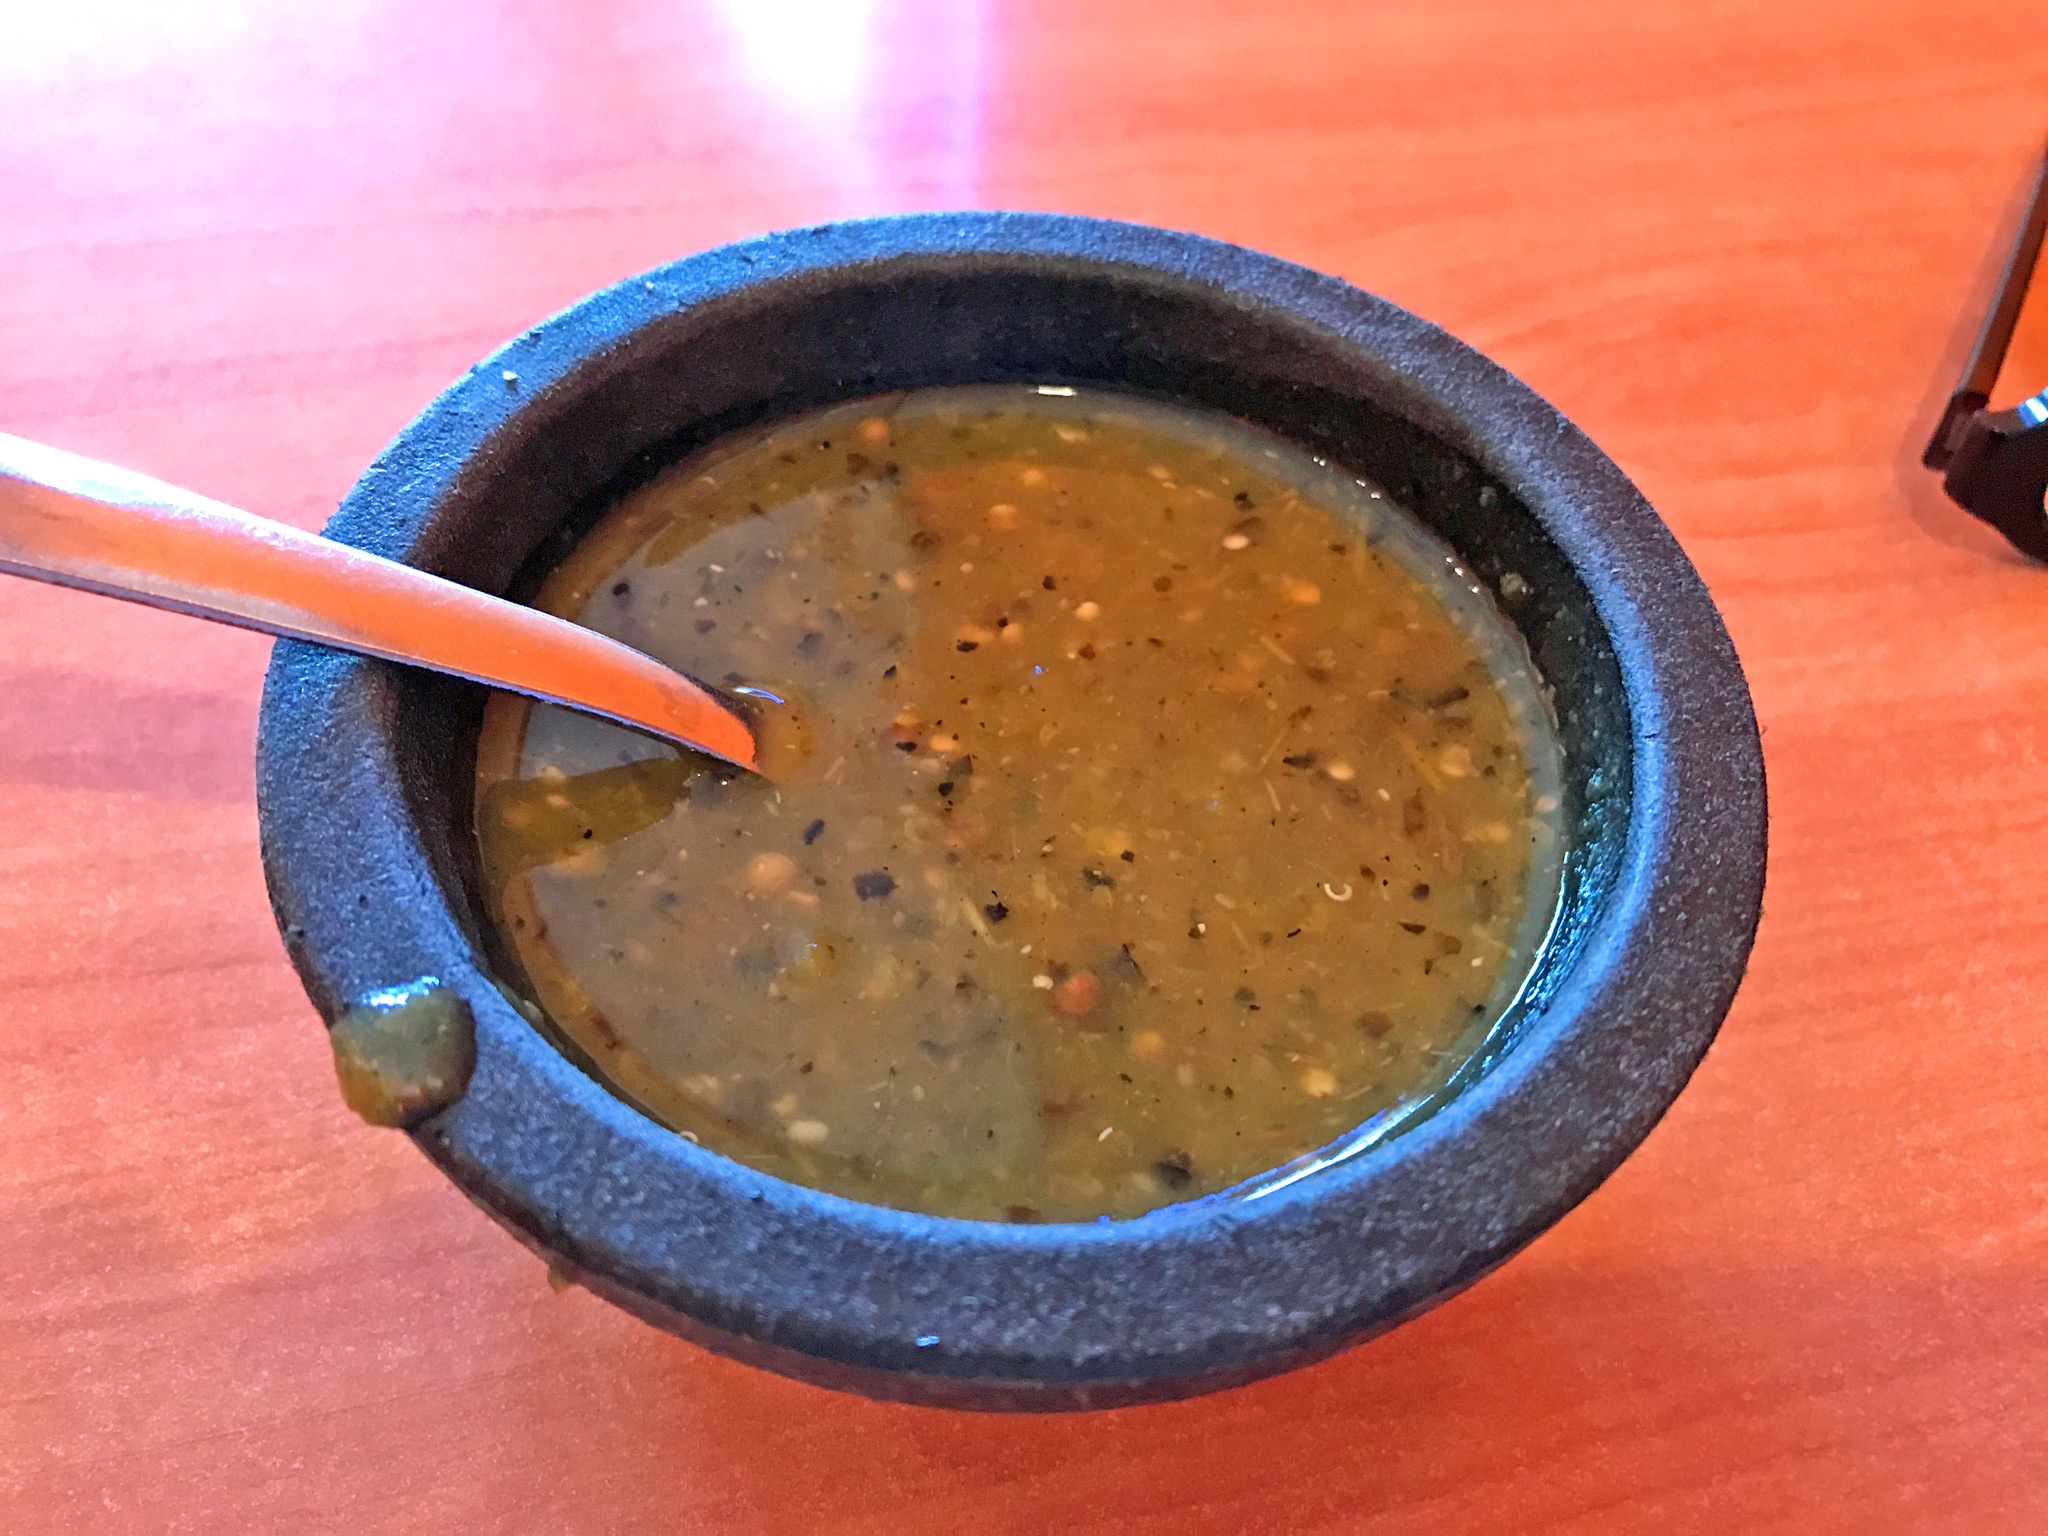 Spicy Salsa Verde